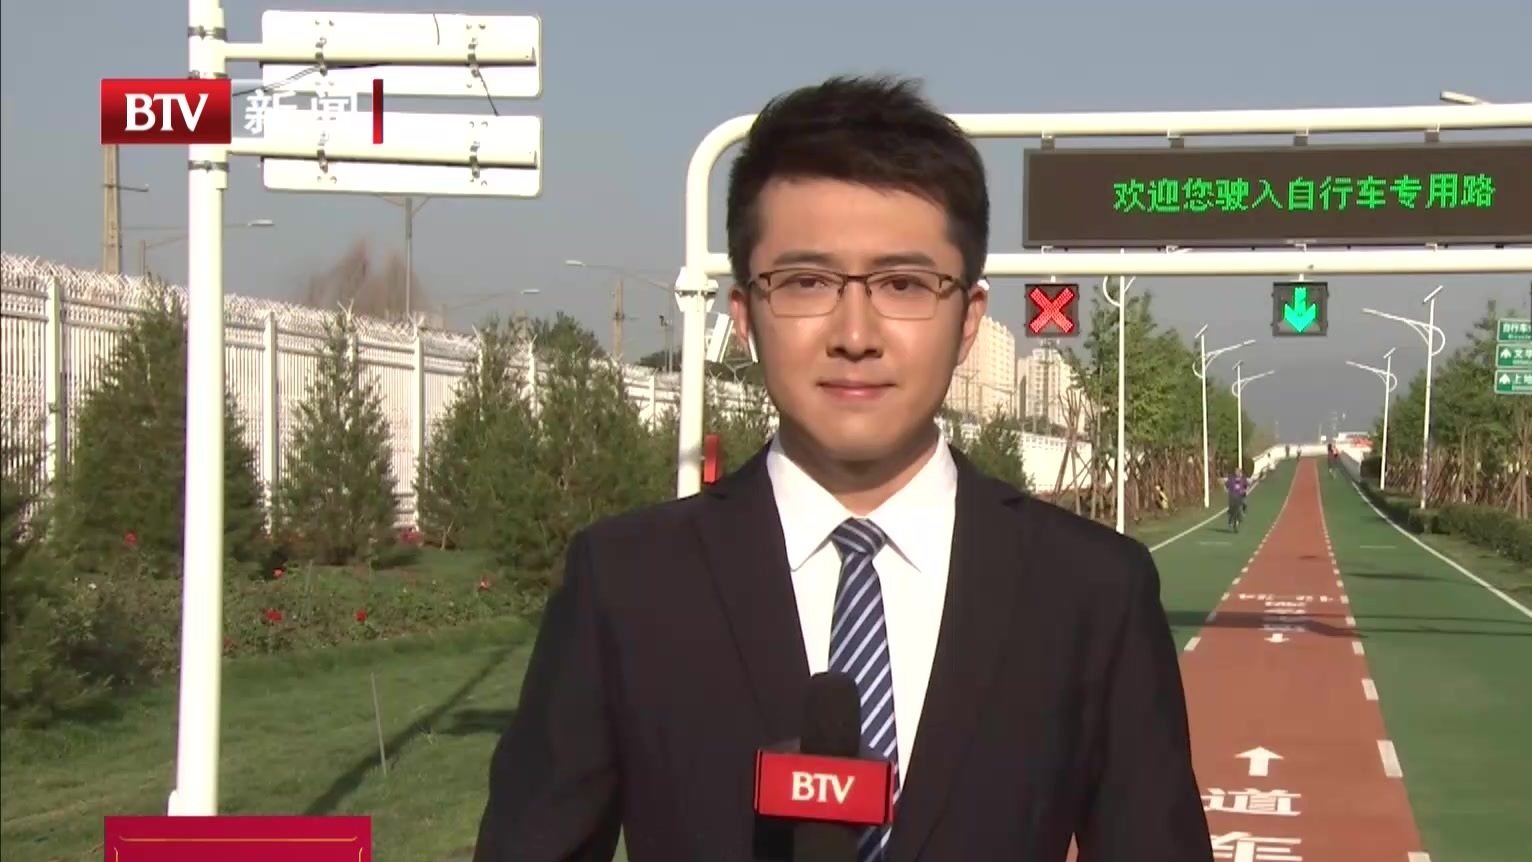 北京首条自行车专用路  迎来工作日早高峰